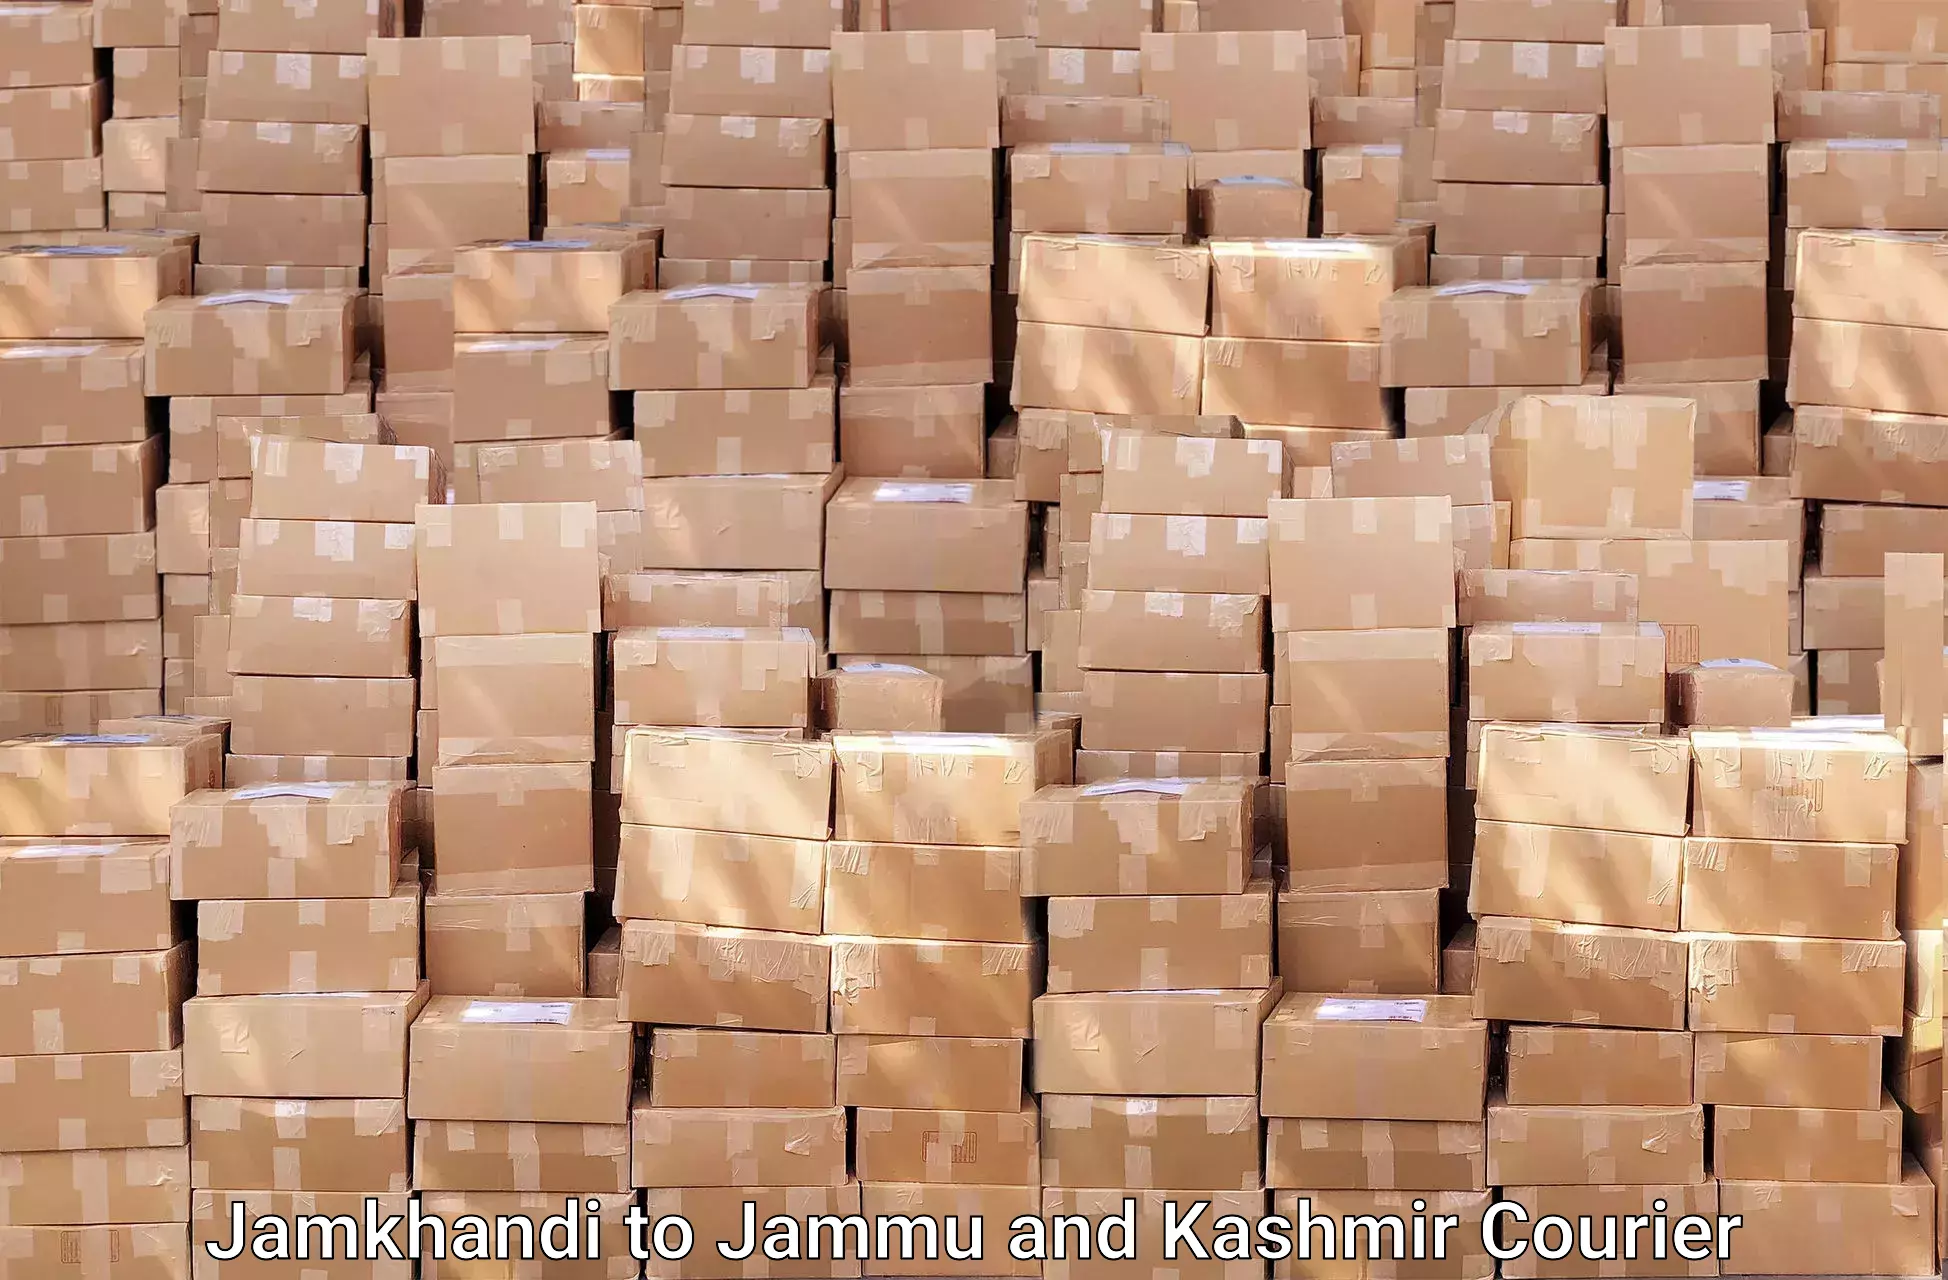 Dependable furniture movers Jamkhandi to Chenani